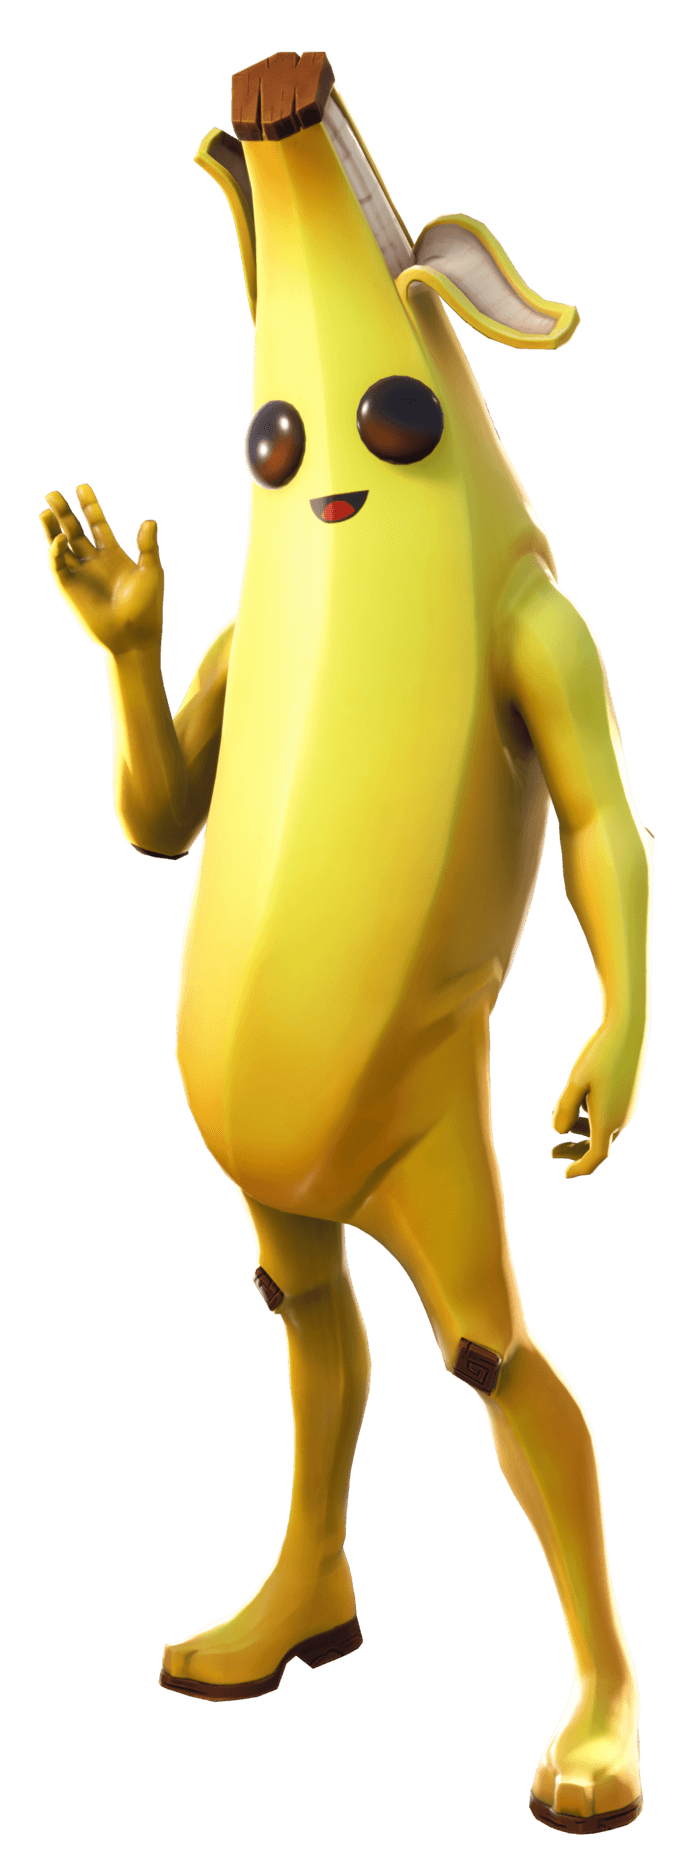 Peely Skin Fortnite Banana Peely Outfit Fortnite Wiki